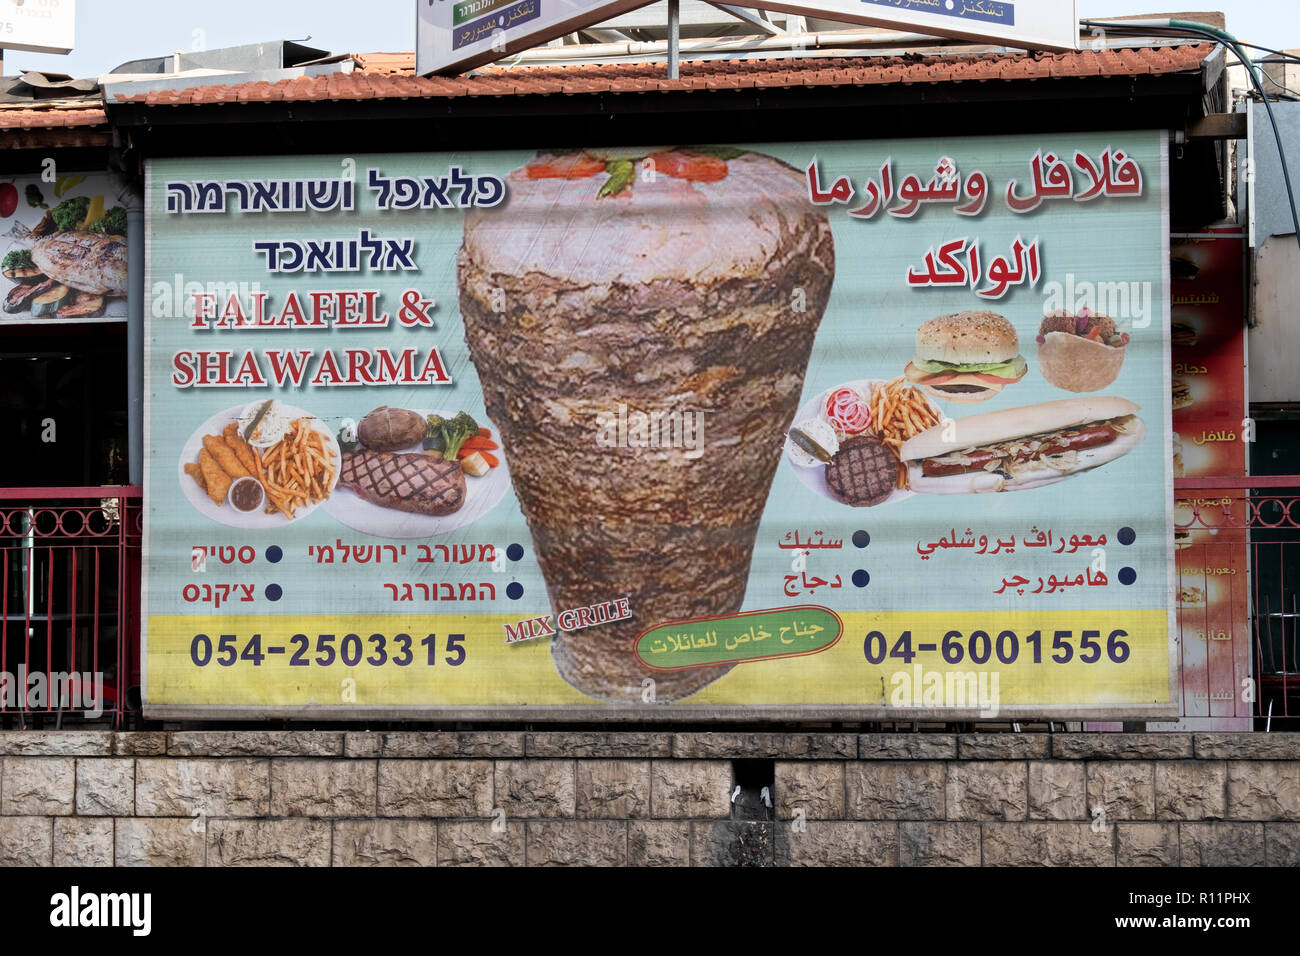 Ein dreisprachiges Schild Werbung für ein lokales Restaurant in Nazareth Israel in Arabisch, Englisch und Hebräisch. Stockfoto